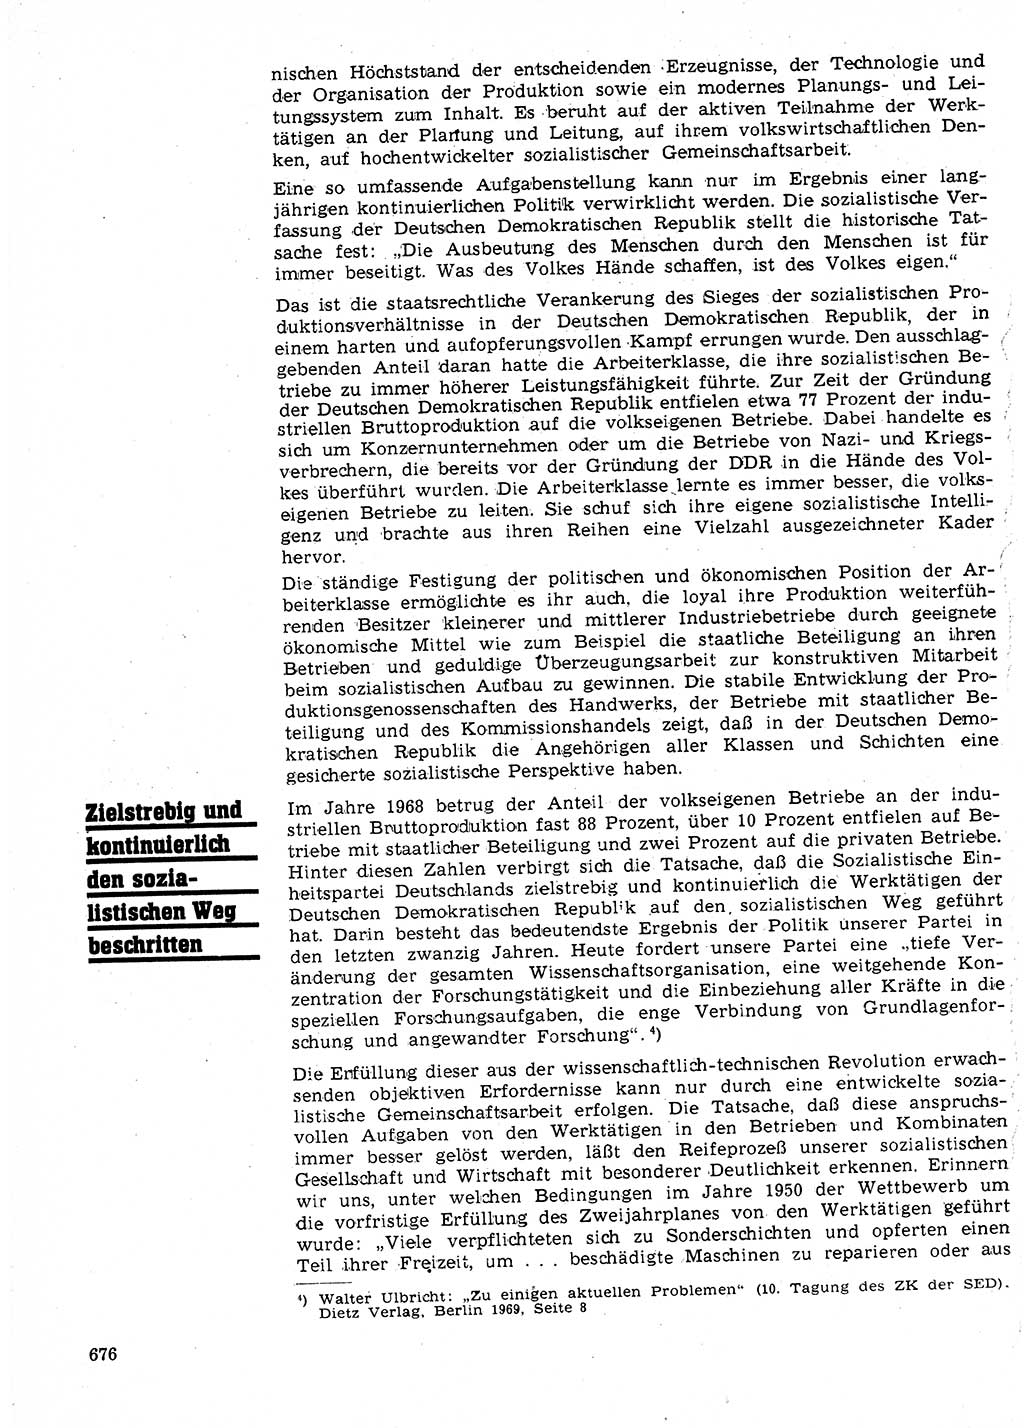 Neuer Weg (NW), Organ des Zentralkomitees (ZK) der SED (Sozialistische Einheitspartei Deutschlands) für Fragen des Parteilebens, 24. Jahrgang [Deutsche Demokratische Republik (DDR)] 1969, Seite 676 (NW ZK SED DDR 1969, S. 676)